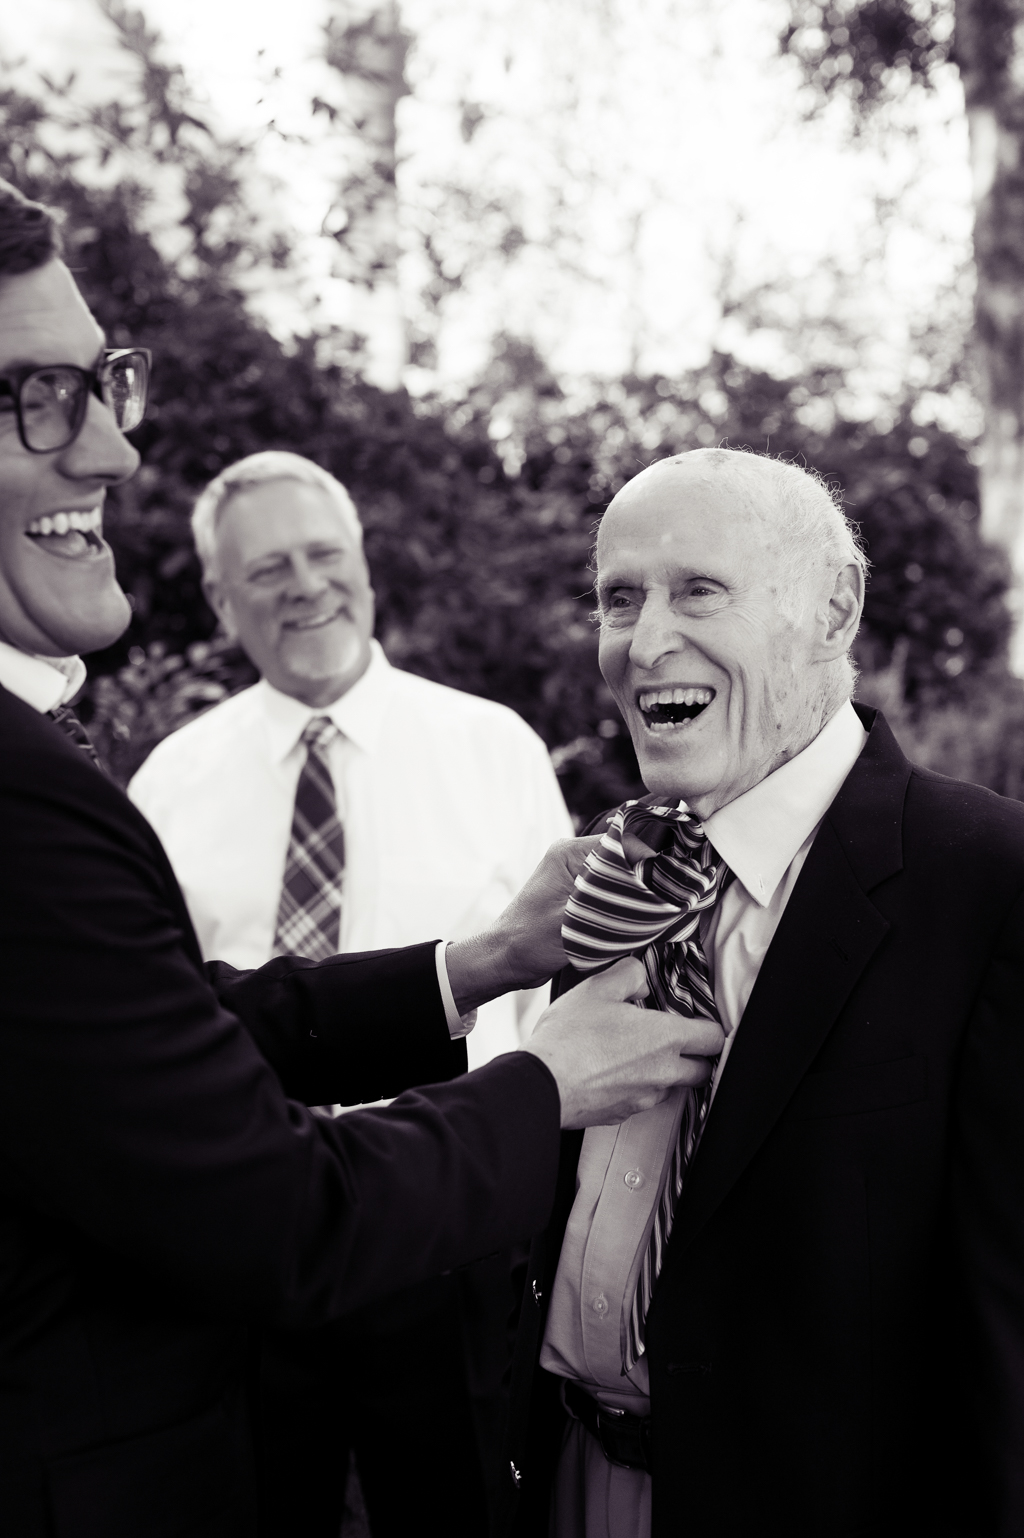 a groom helps tie his grandpas tie